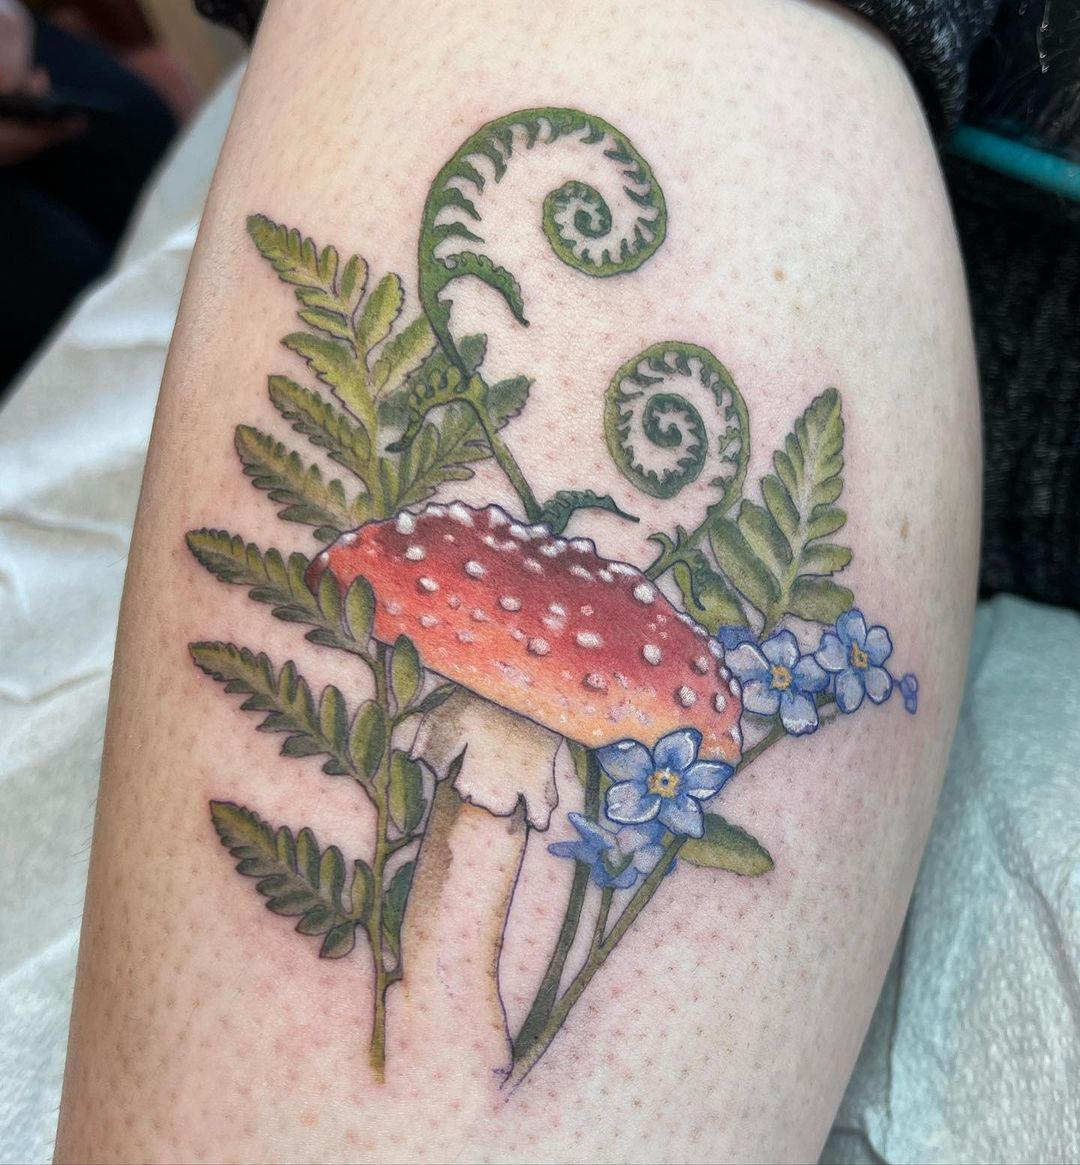 Mushroom Tattoo Ideas